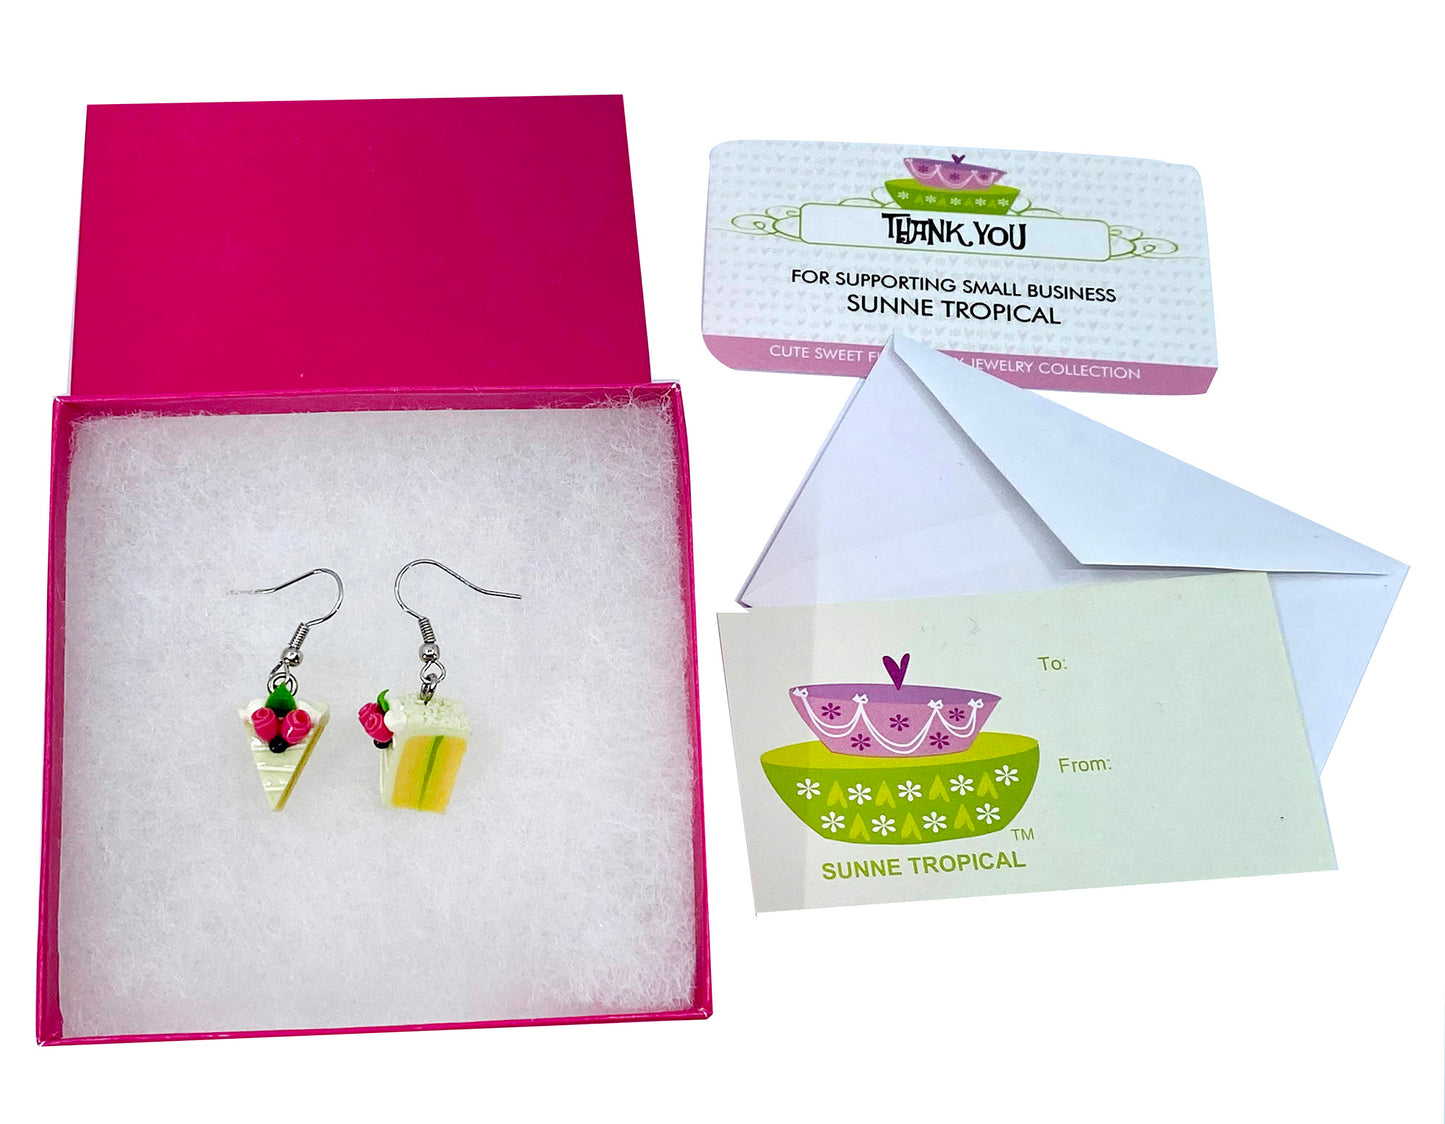 Handmade miniature food model earrings for Girls Teen - Slice Cake Lemon Cake